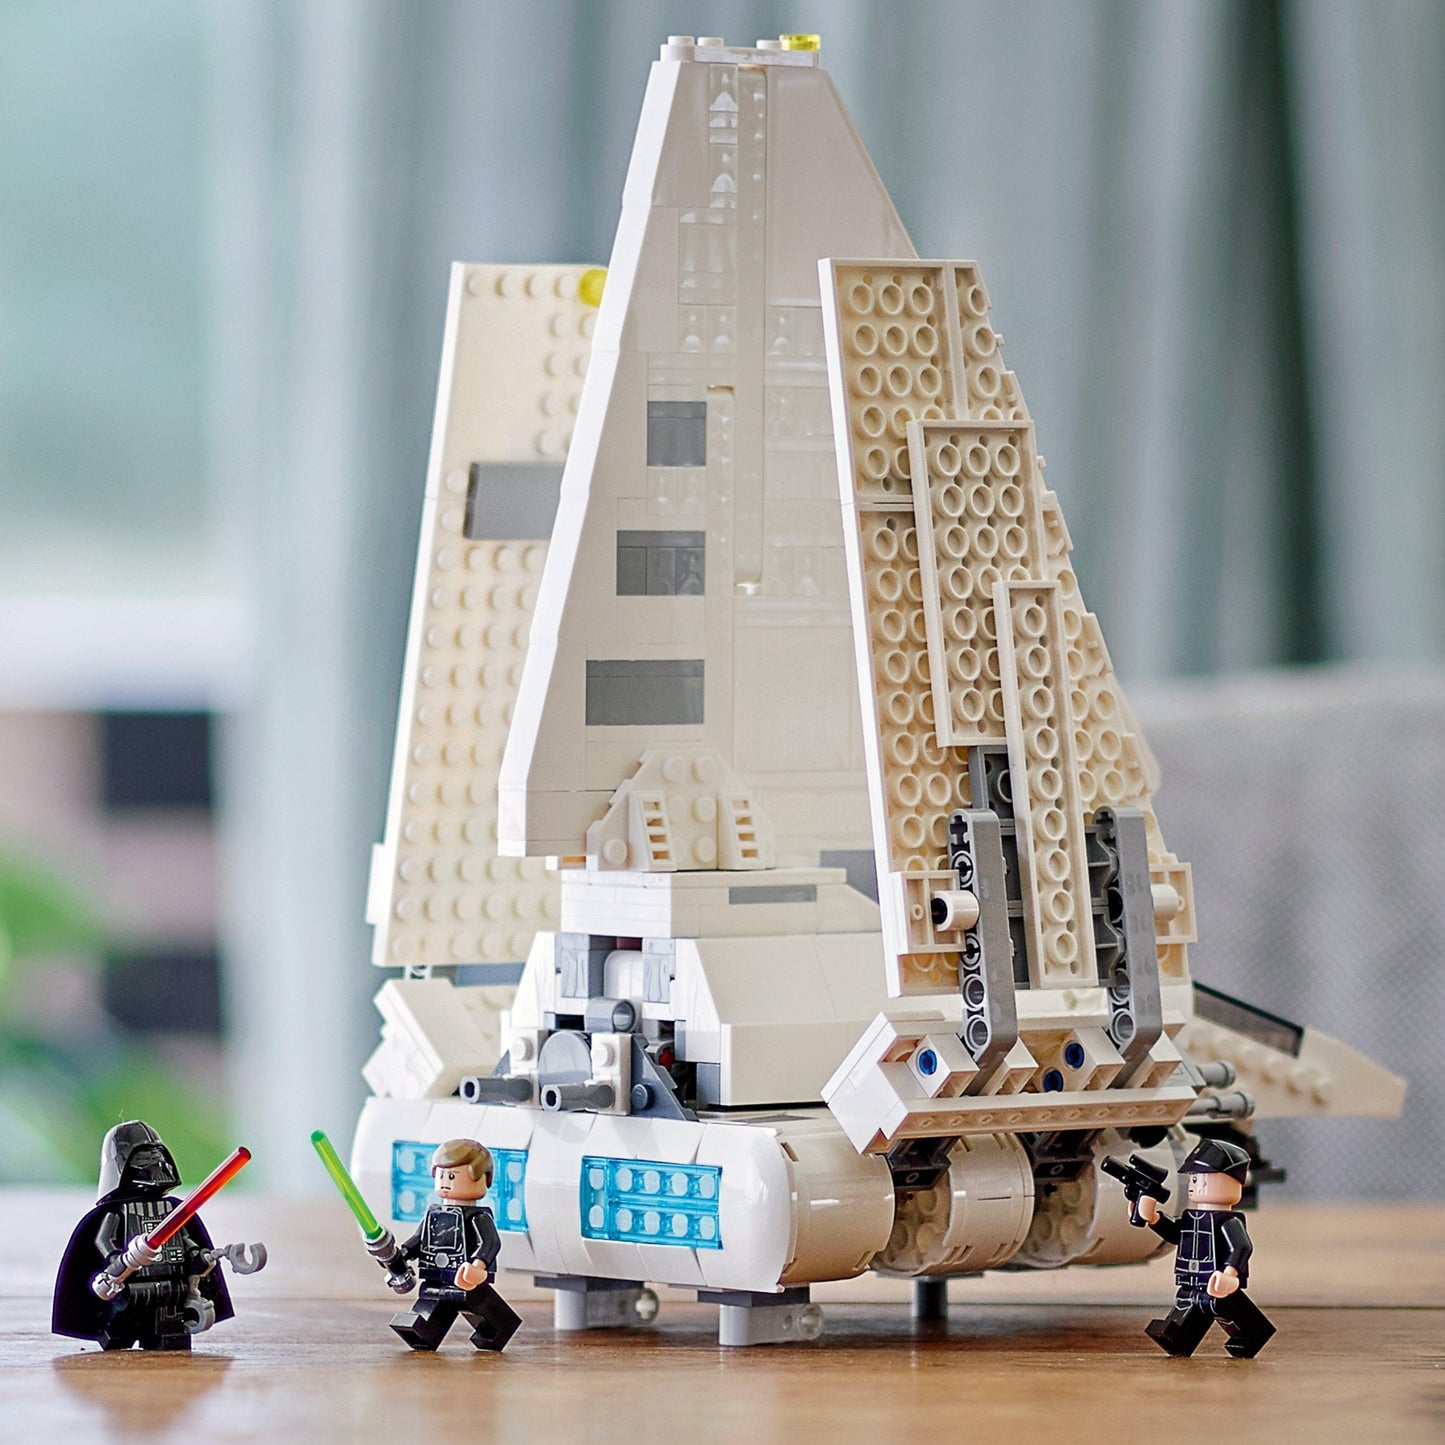 LEGO The Imperial Shuttle 75302 StarWars LEGO STARWARS @ 2TTOYS LEGO €. 129.99